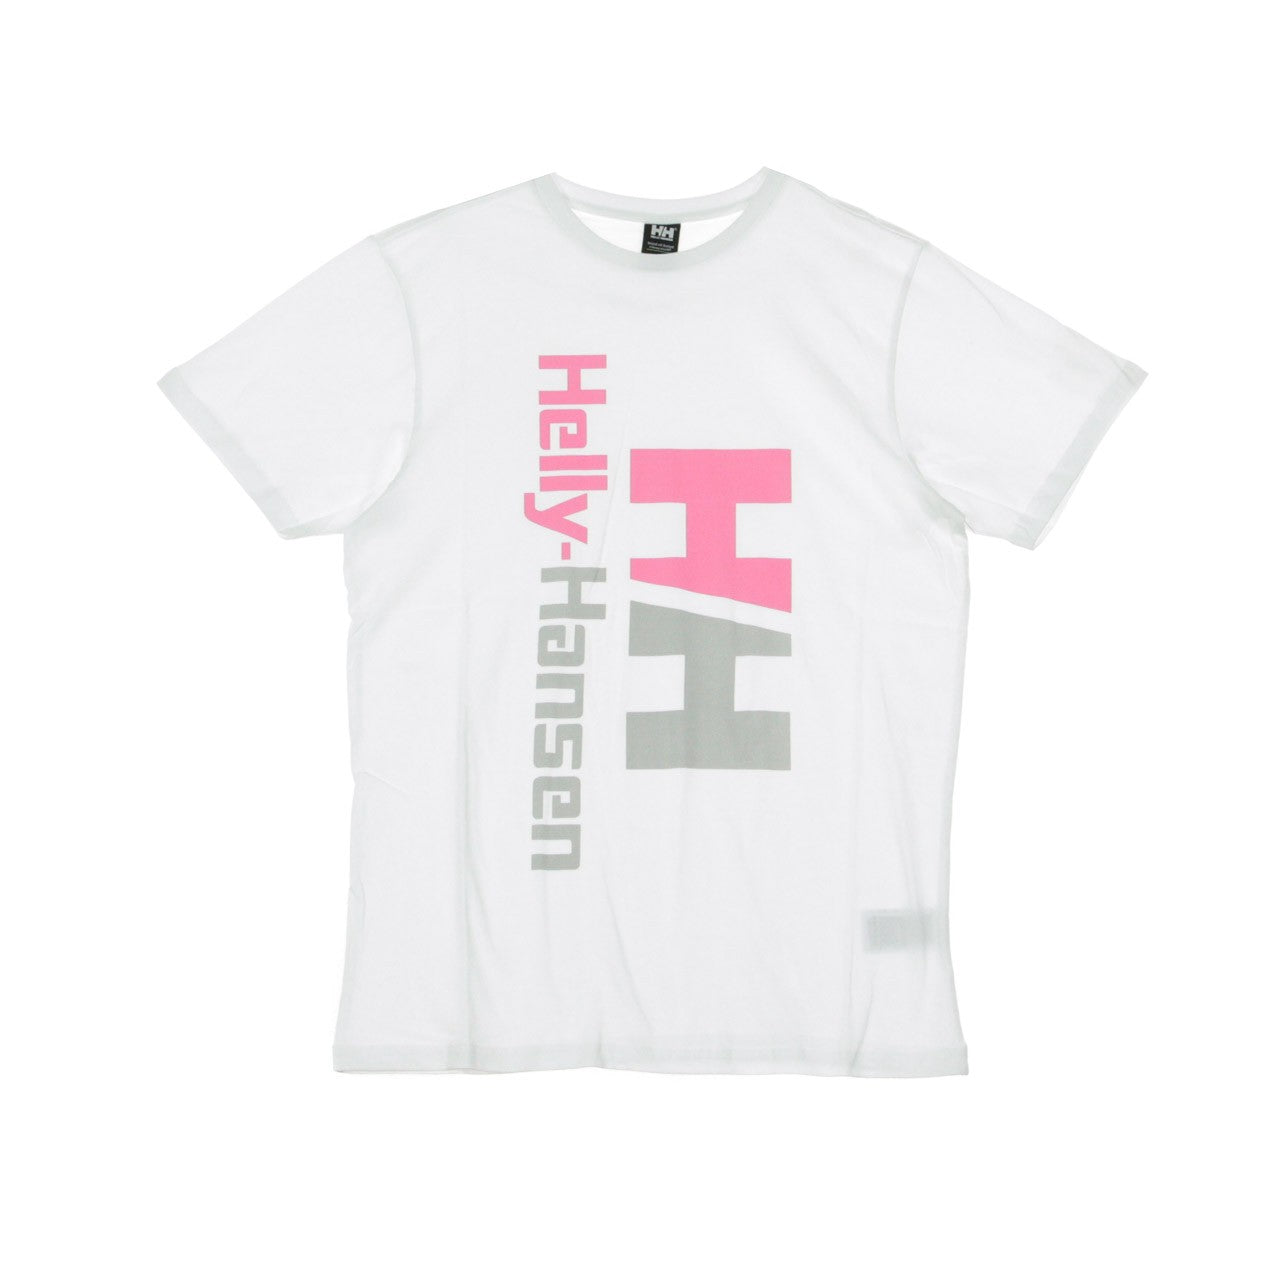 Men's Retro Tee White/fuchsia T-shirt